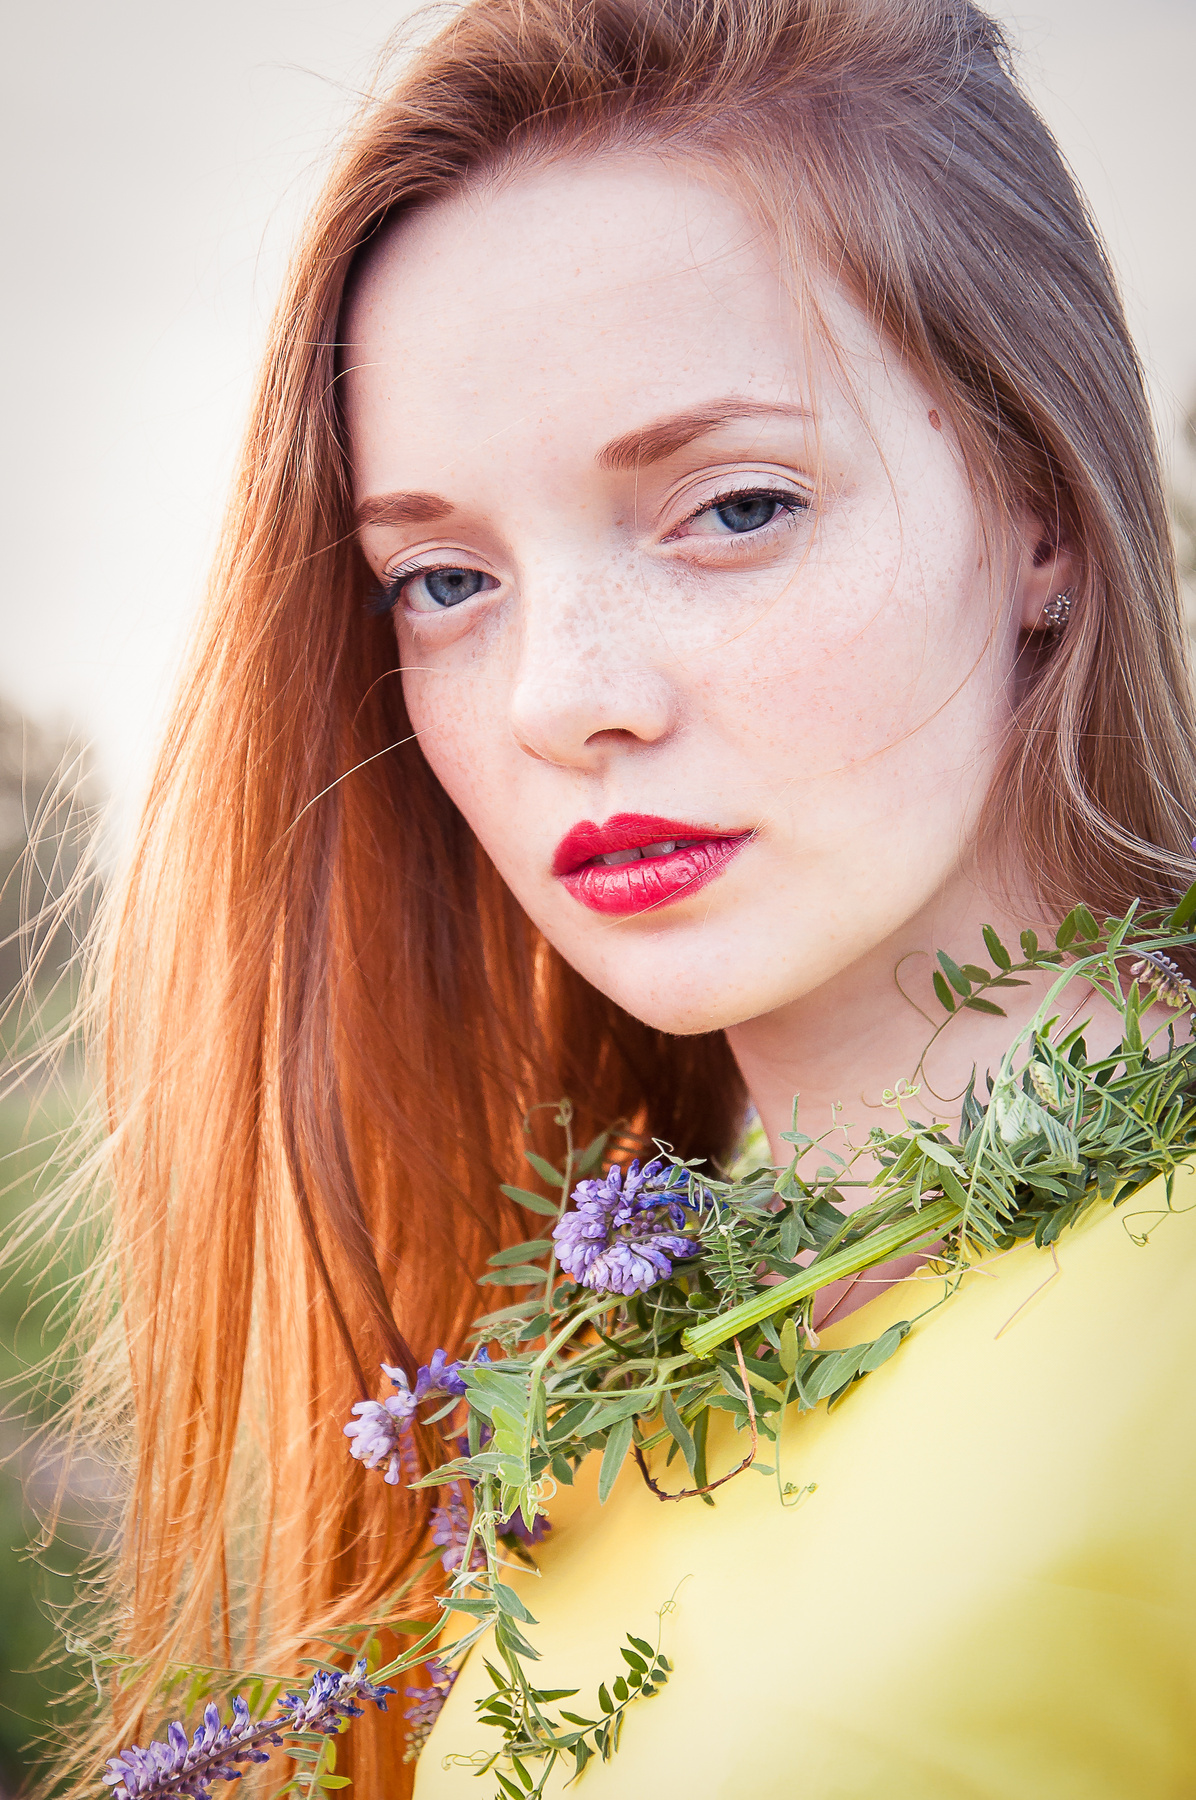 Юлия рыжая девушка цветы лето